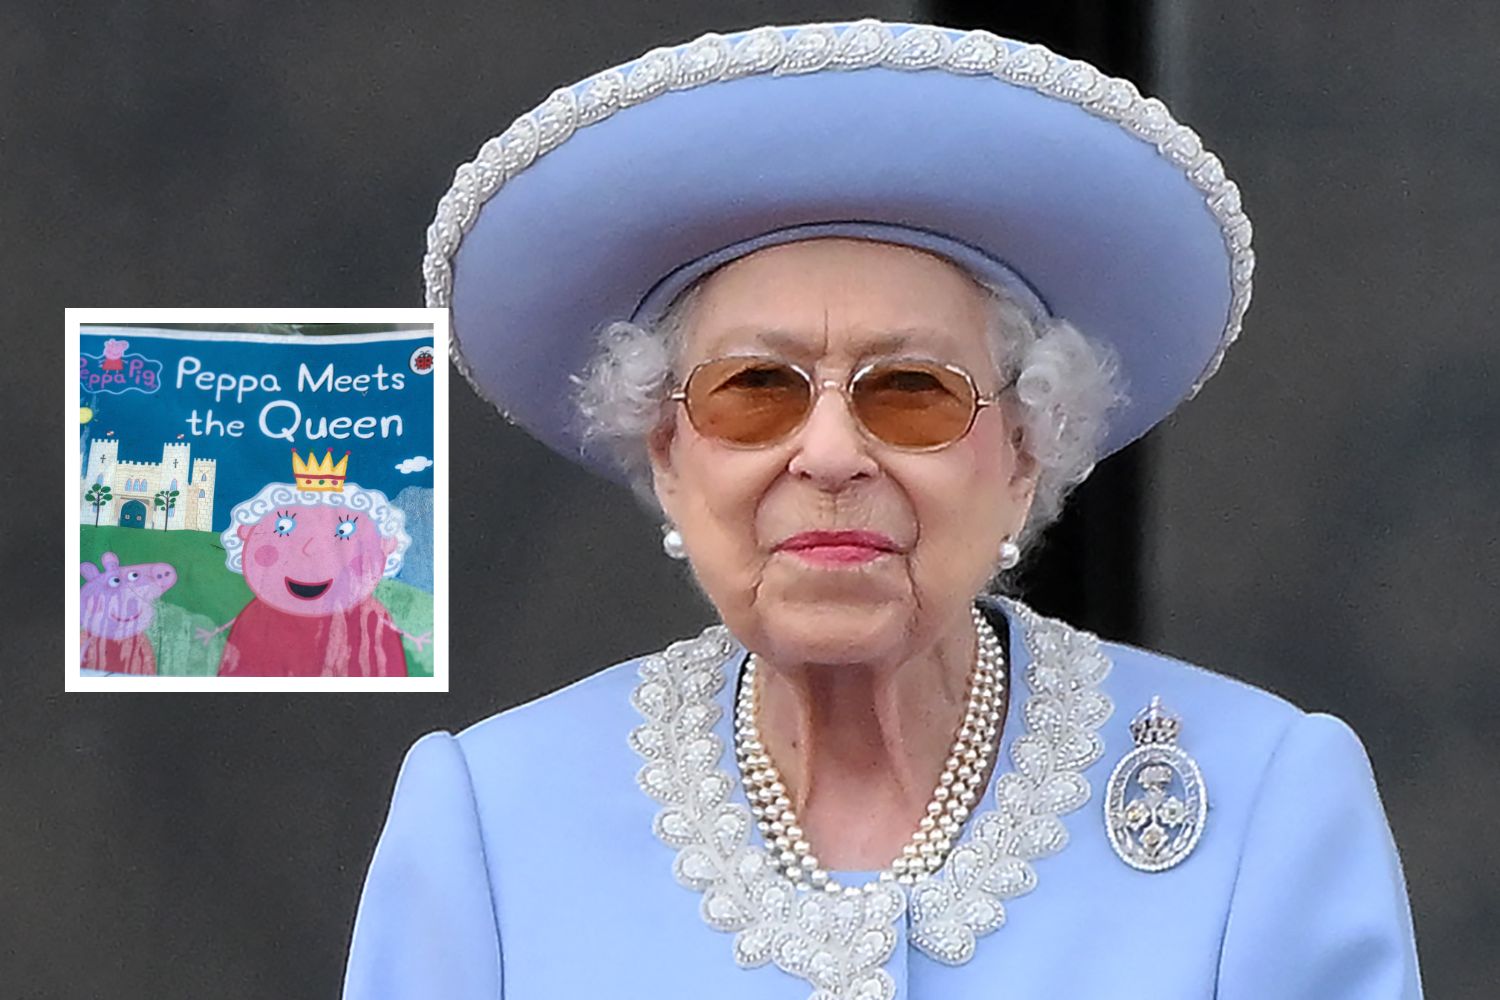 Queen Elizabeth Tribute in 'Peppa Pig' Sparks Wild Reactions: 'Dark Turn